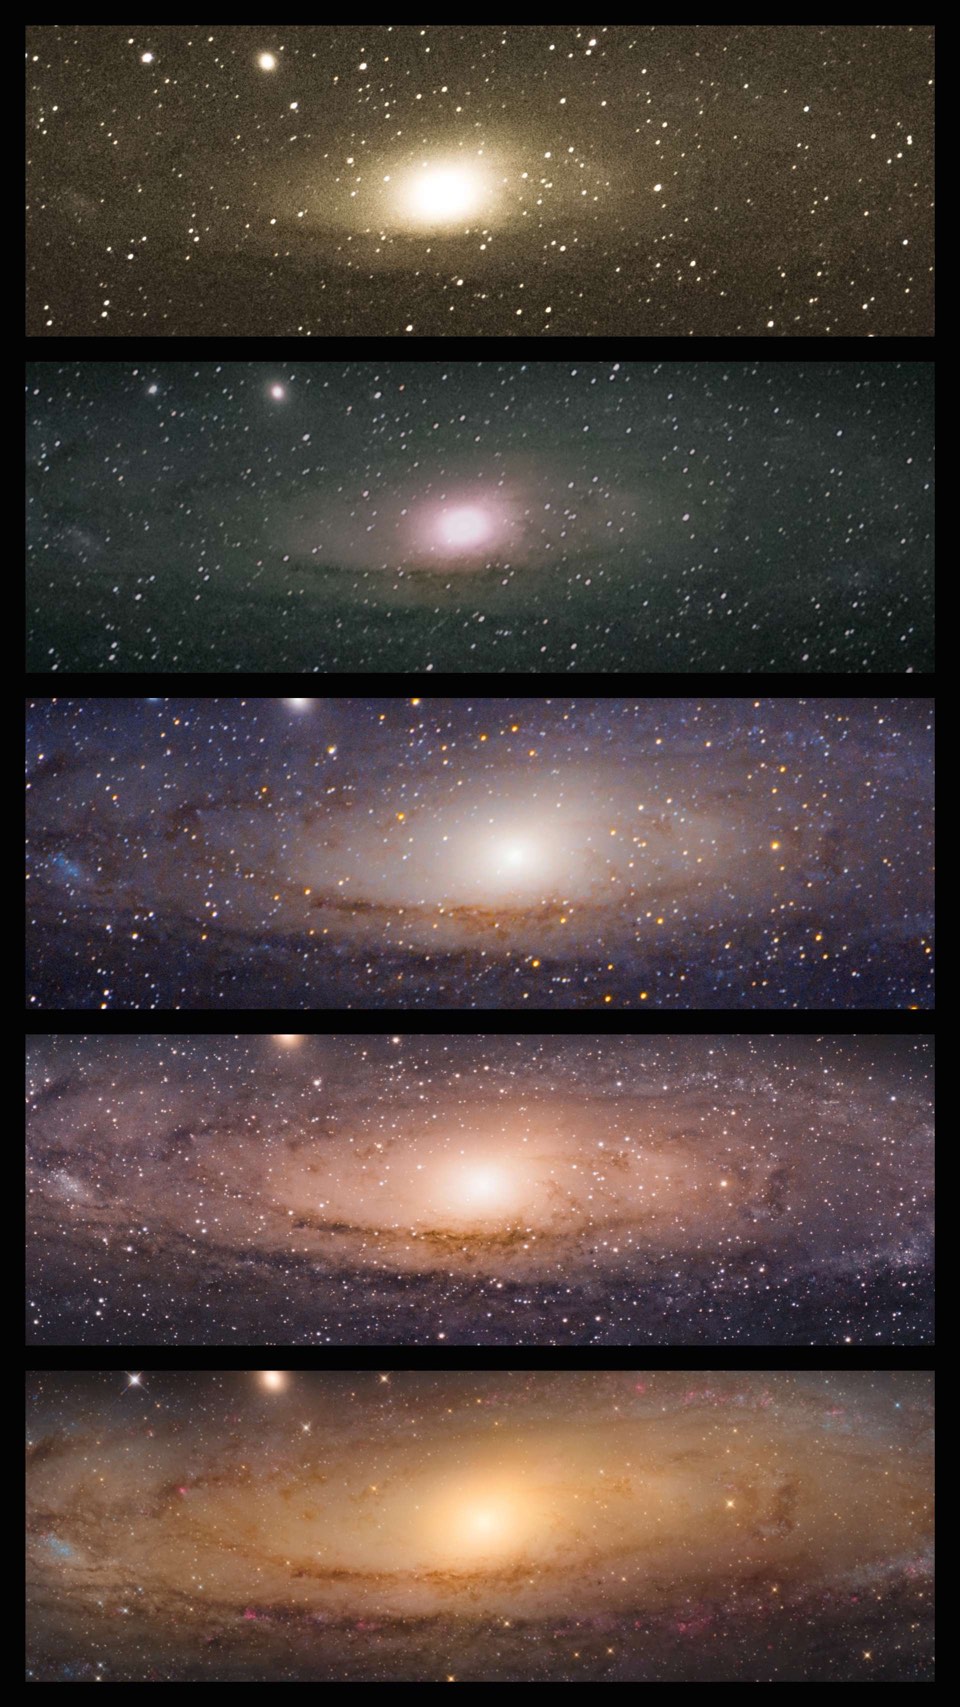 Die Andromedagalaxie M 31, fotografiert von Sophie Paulin. 2x ohne Tracking mit 200mm Teleobjektiv, 1x mit Fotomontierung und 200mm Teleobjektiv mit Telekonverter, 1x mit Fotomontierung und 600mm Teleobjektiv, 1x mit 8" f/4.5 Newton-Teleskop.